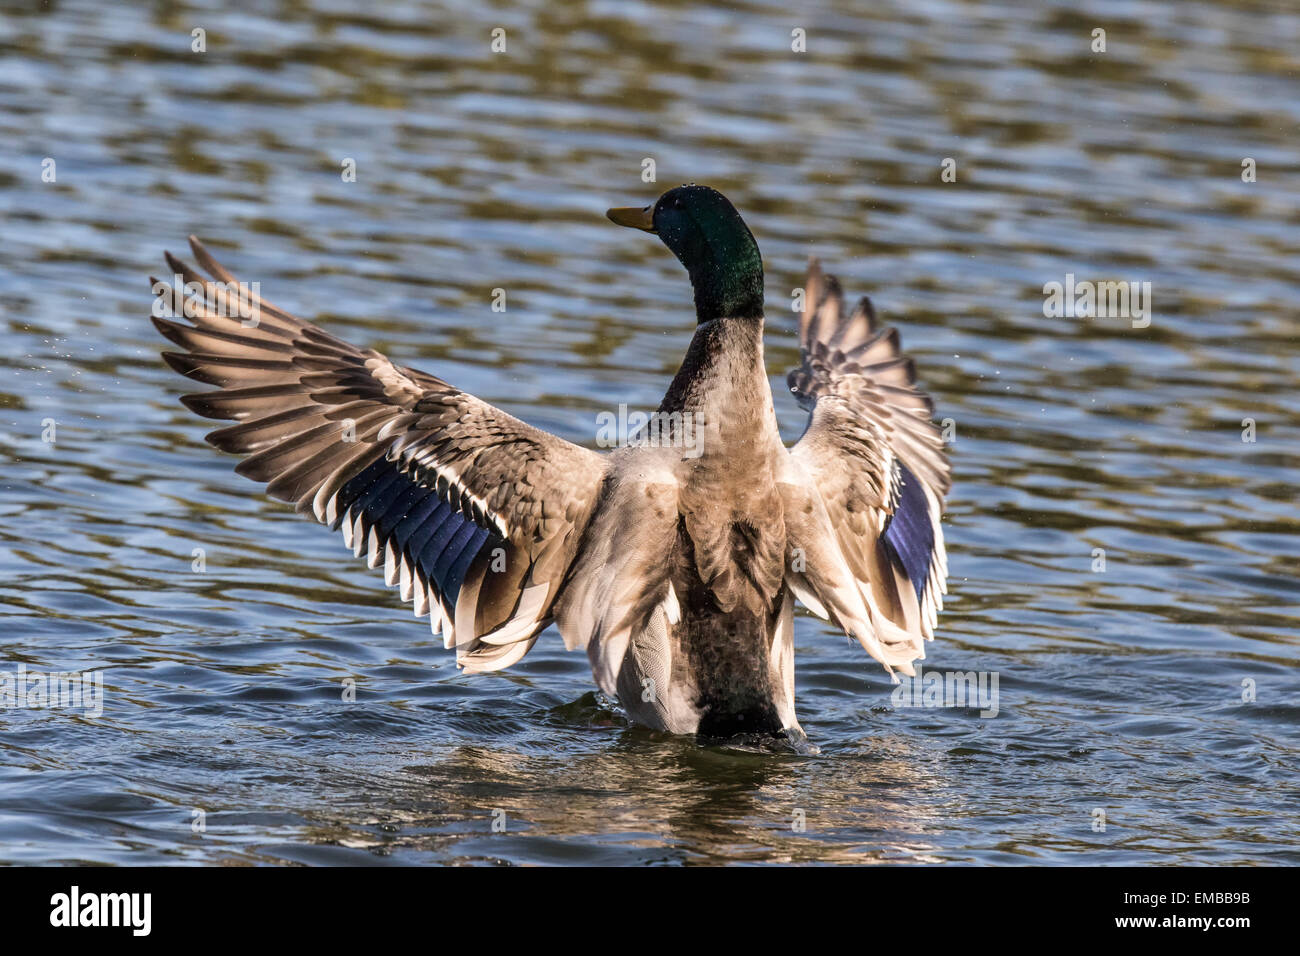 MALARD pato (Anas platyrhynchos) batir las alas en el estanque. Foto de stock